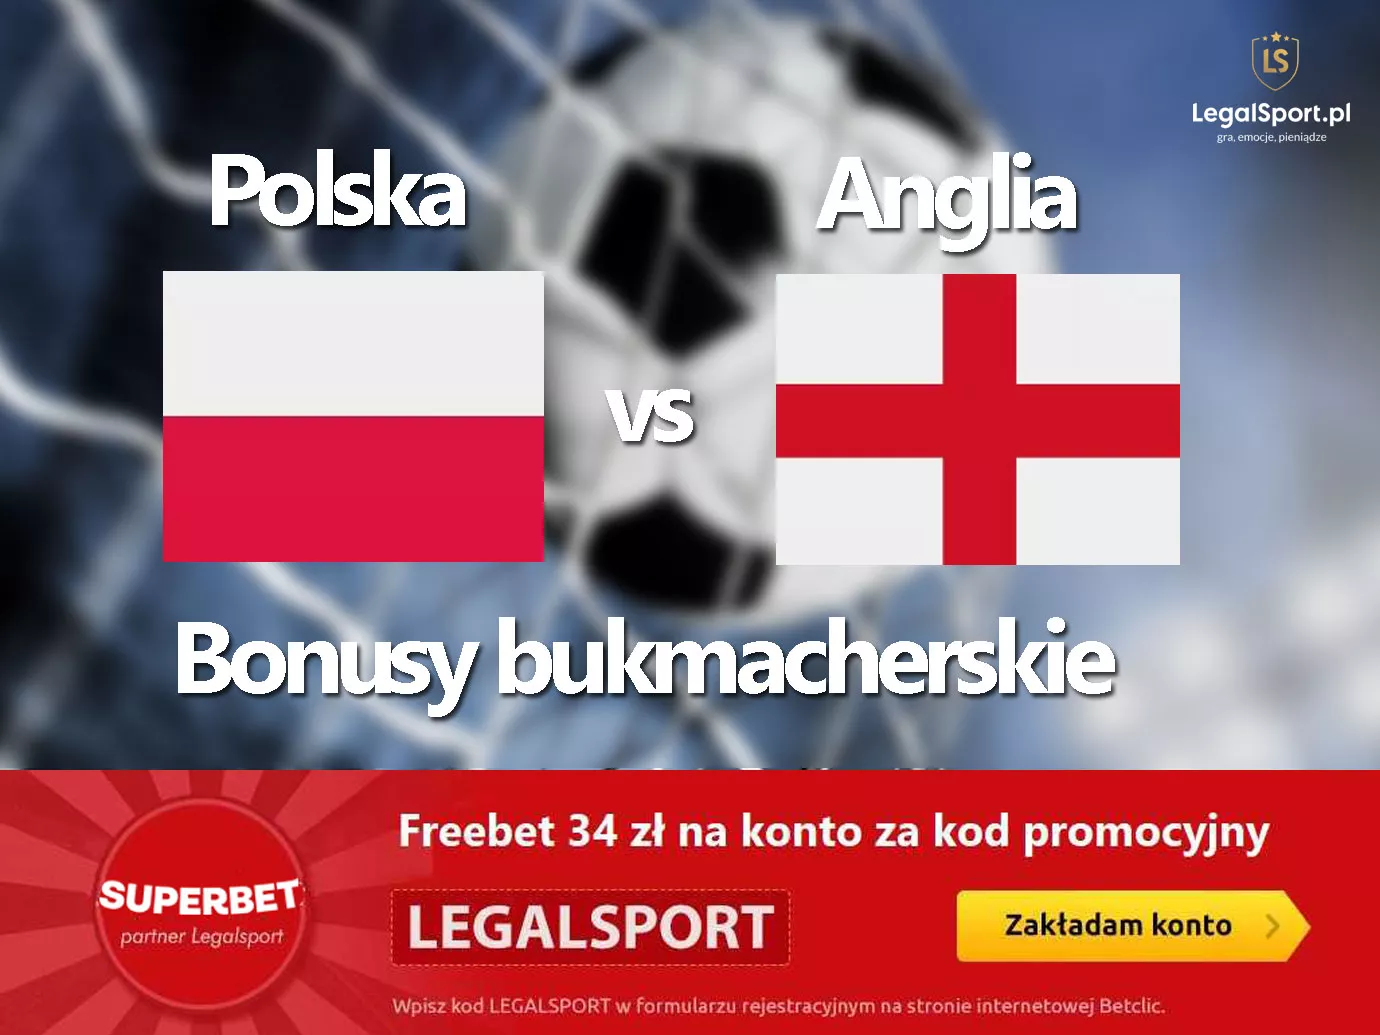 Polska vs Anglia - bonusy i promocje meczowe